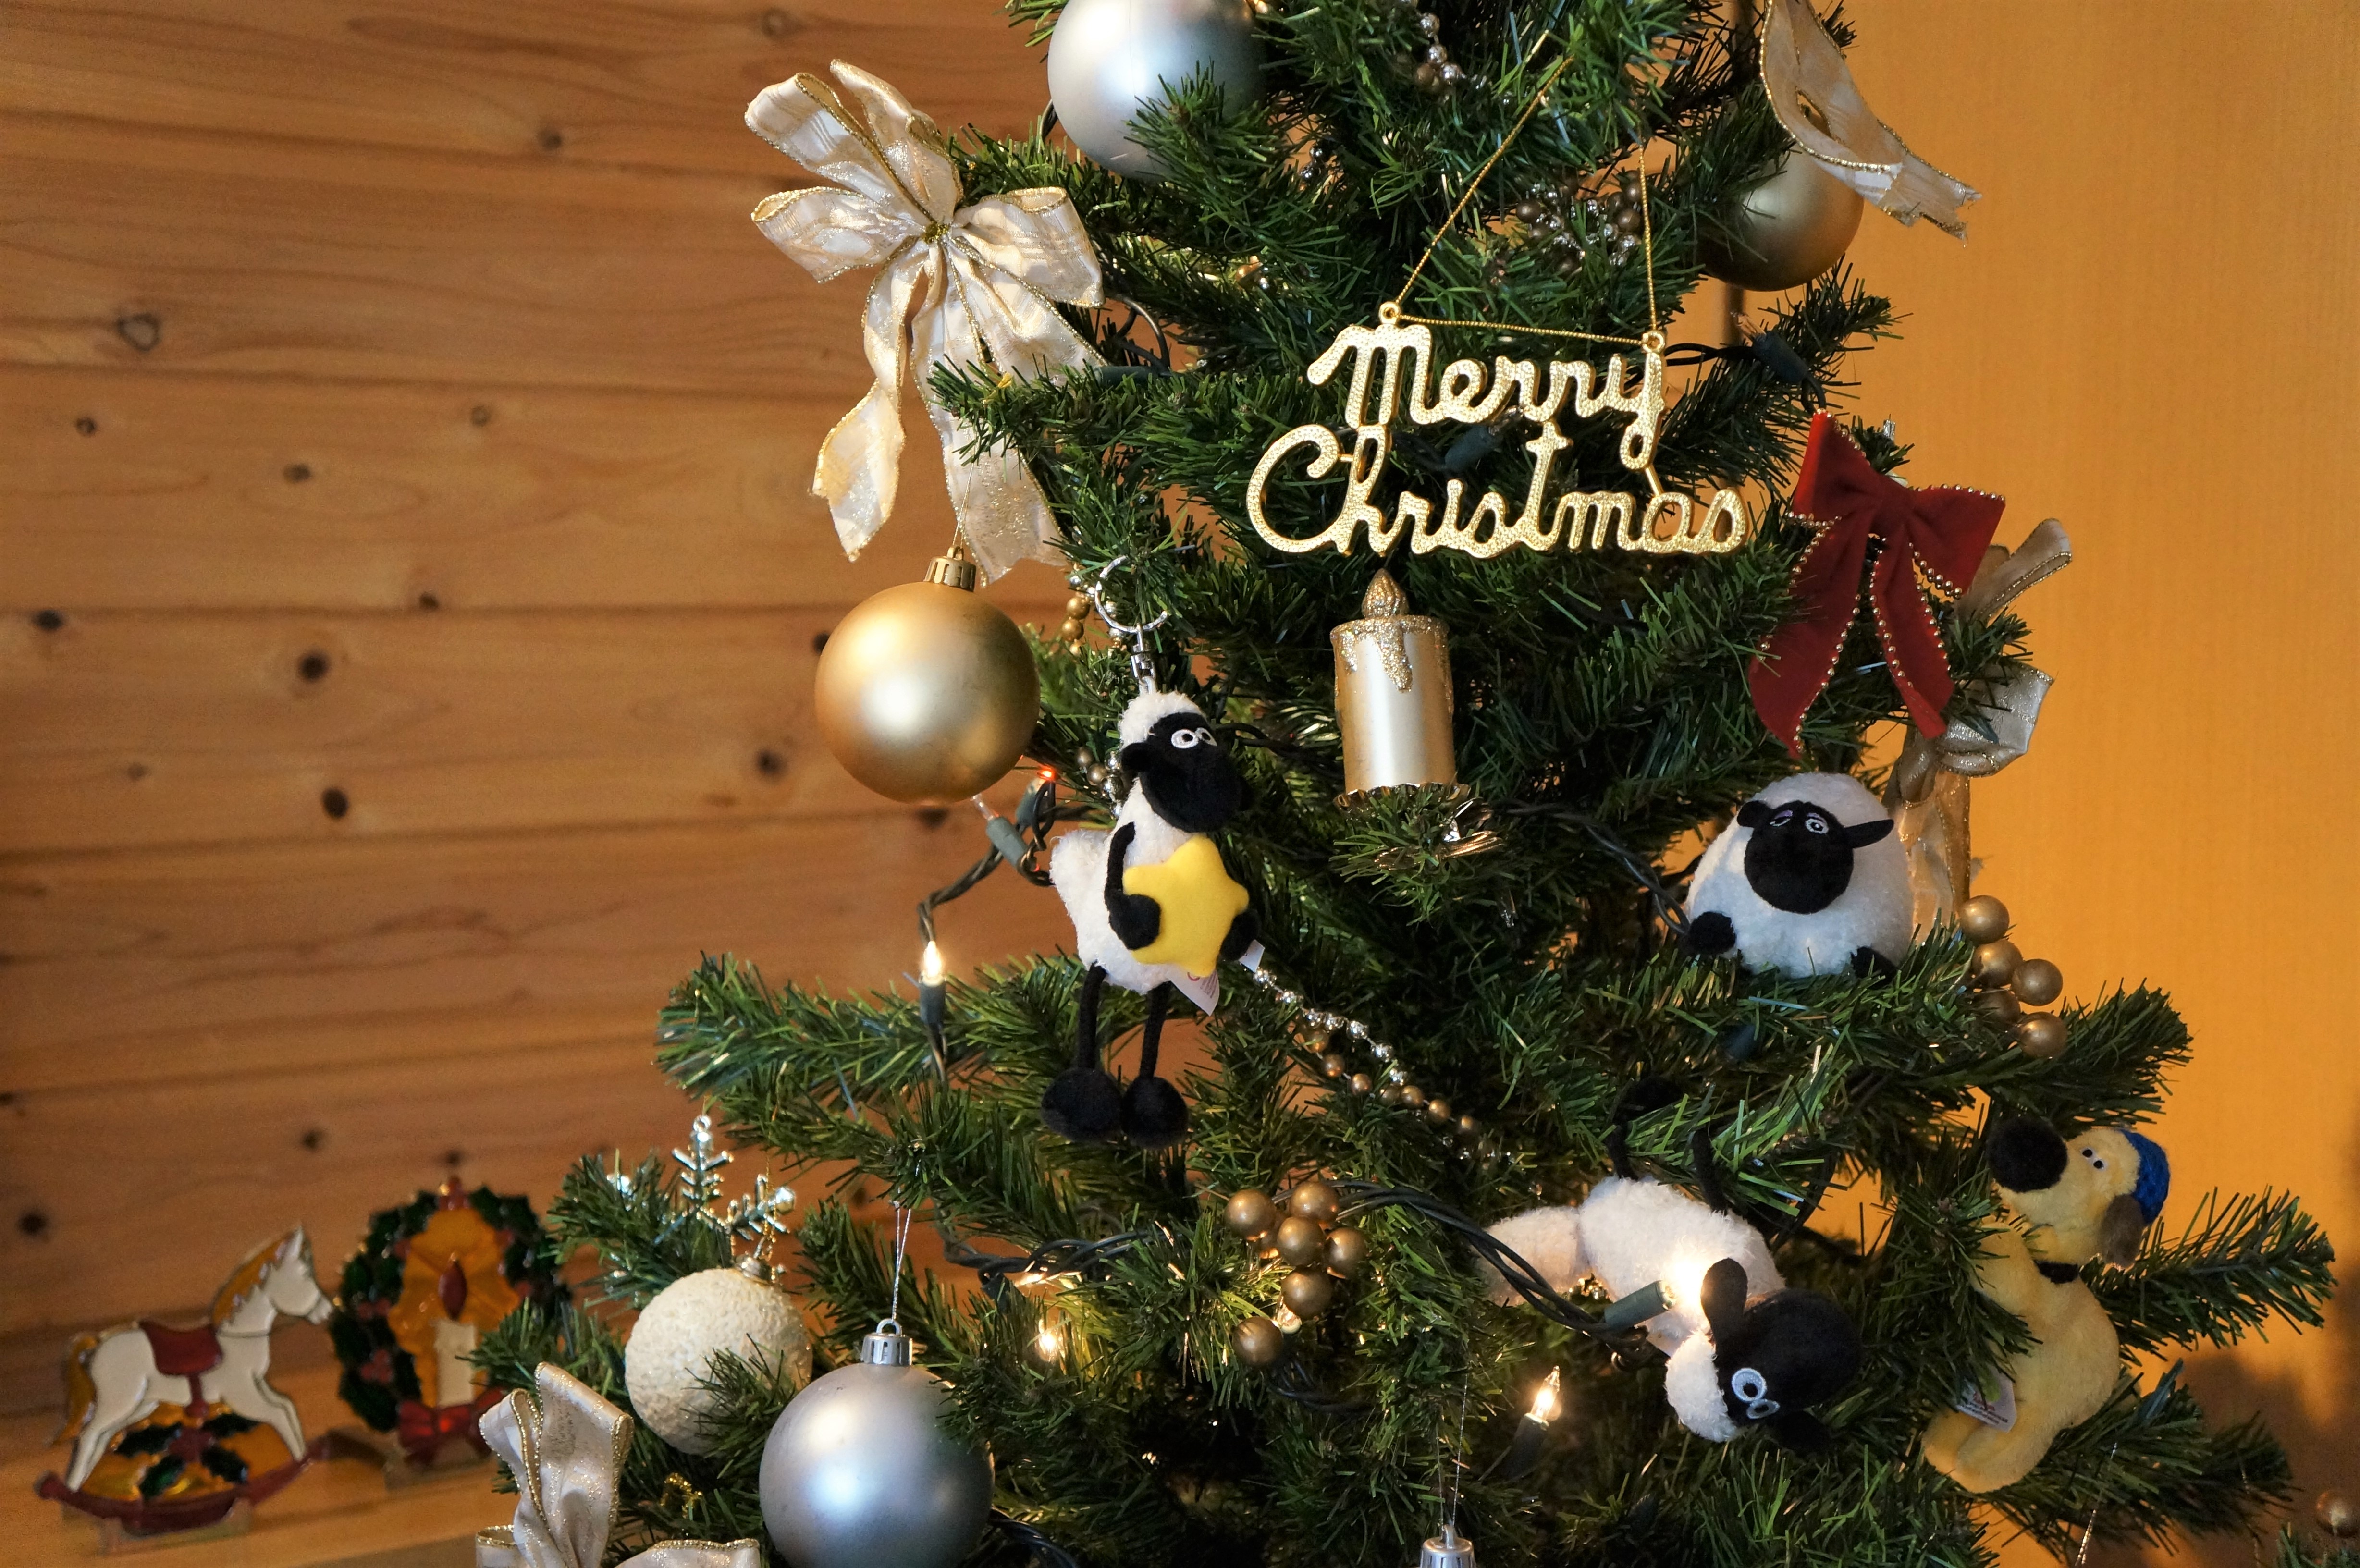 今年のクリスマスはひつじのショーンと過ごしませんか クリスマス期間限定カフェーメニューやおうちクリスマスを盛り上げるアイテムが満載 株式会社東北新社のプレスリリース